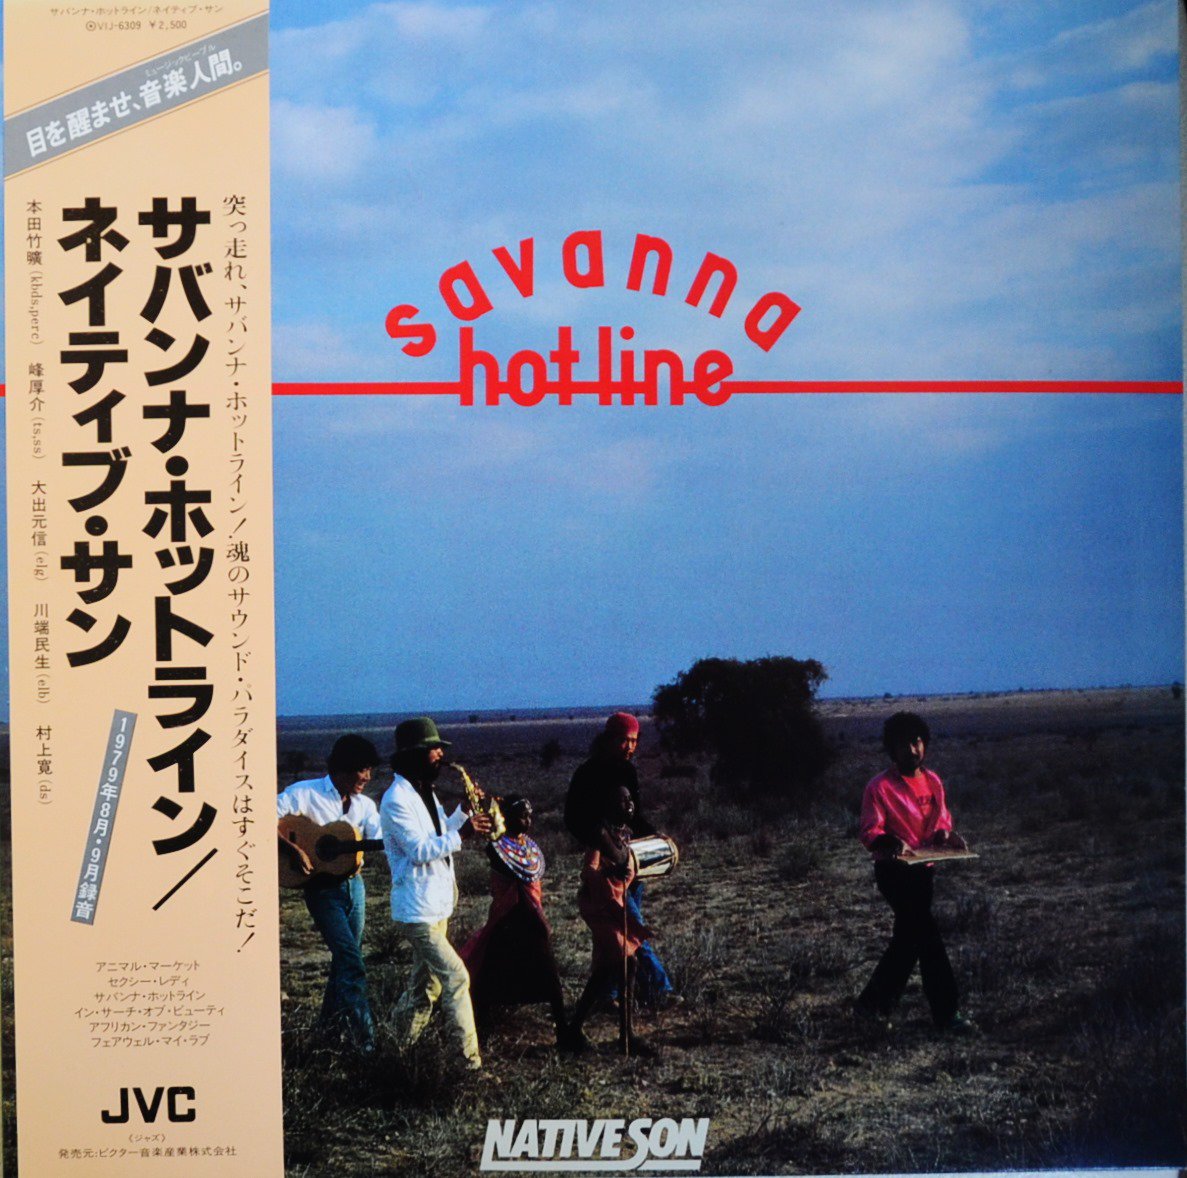 NATIVE SON ネイティブ・サン / サバンナ・ホットライン SAVANNA HOT LINE (LP)